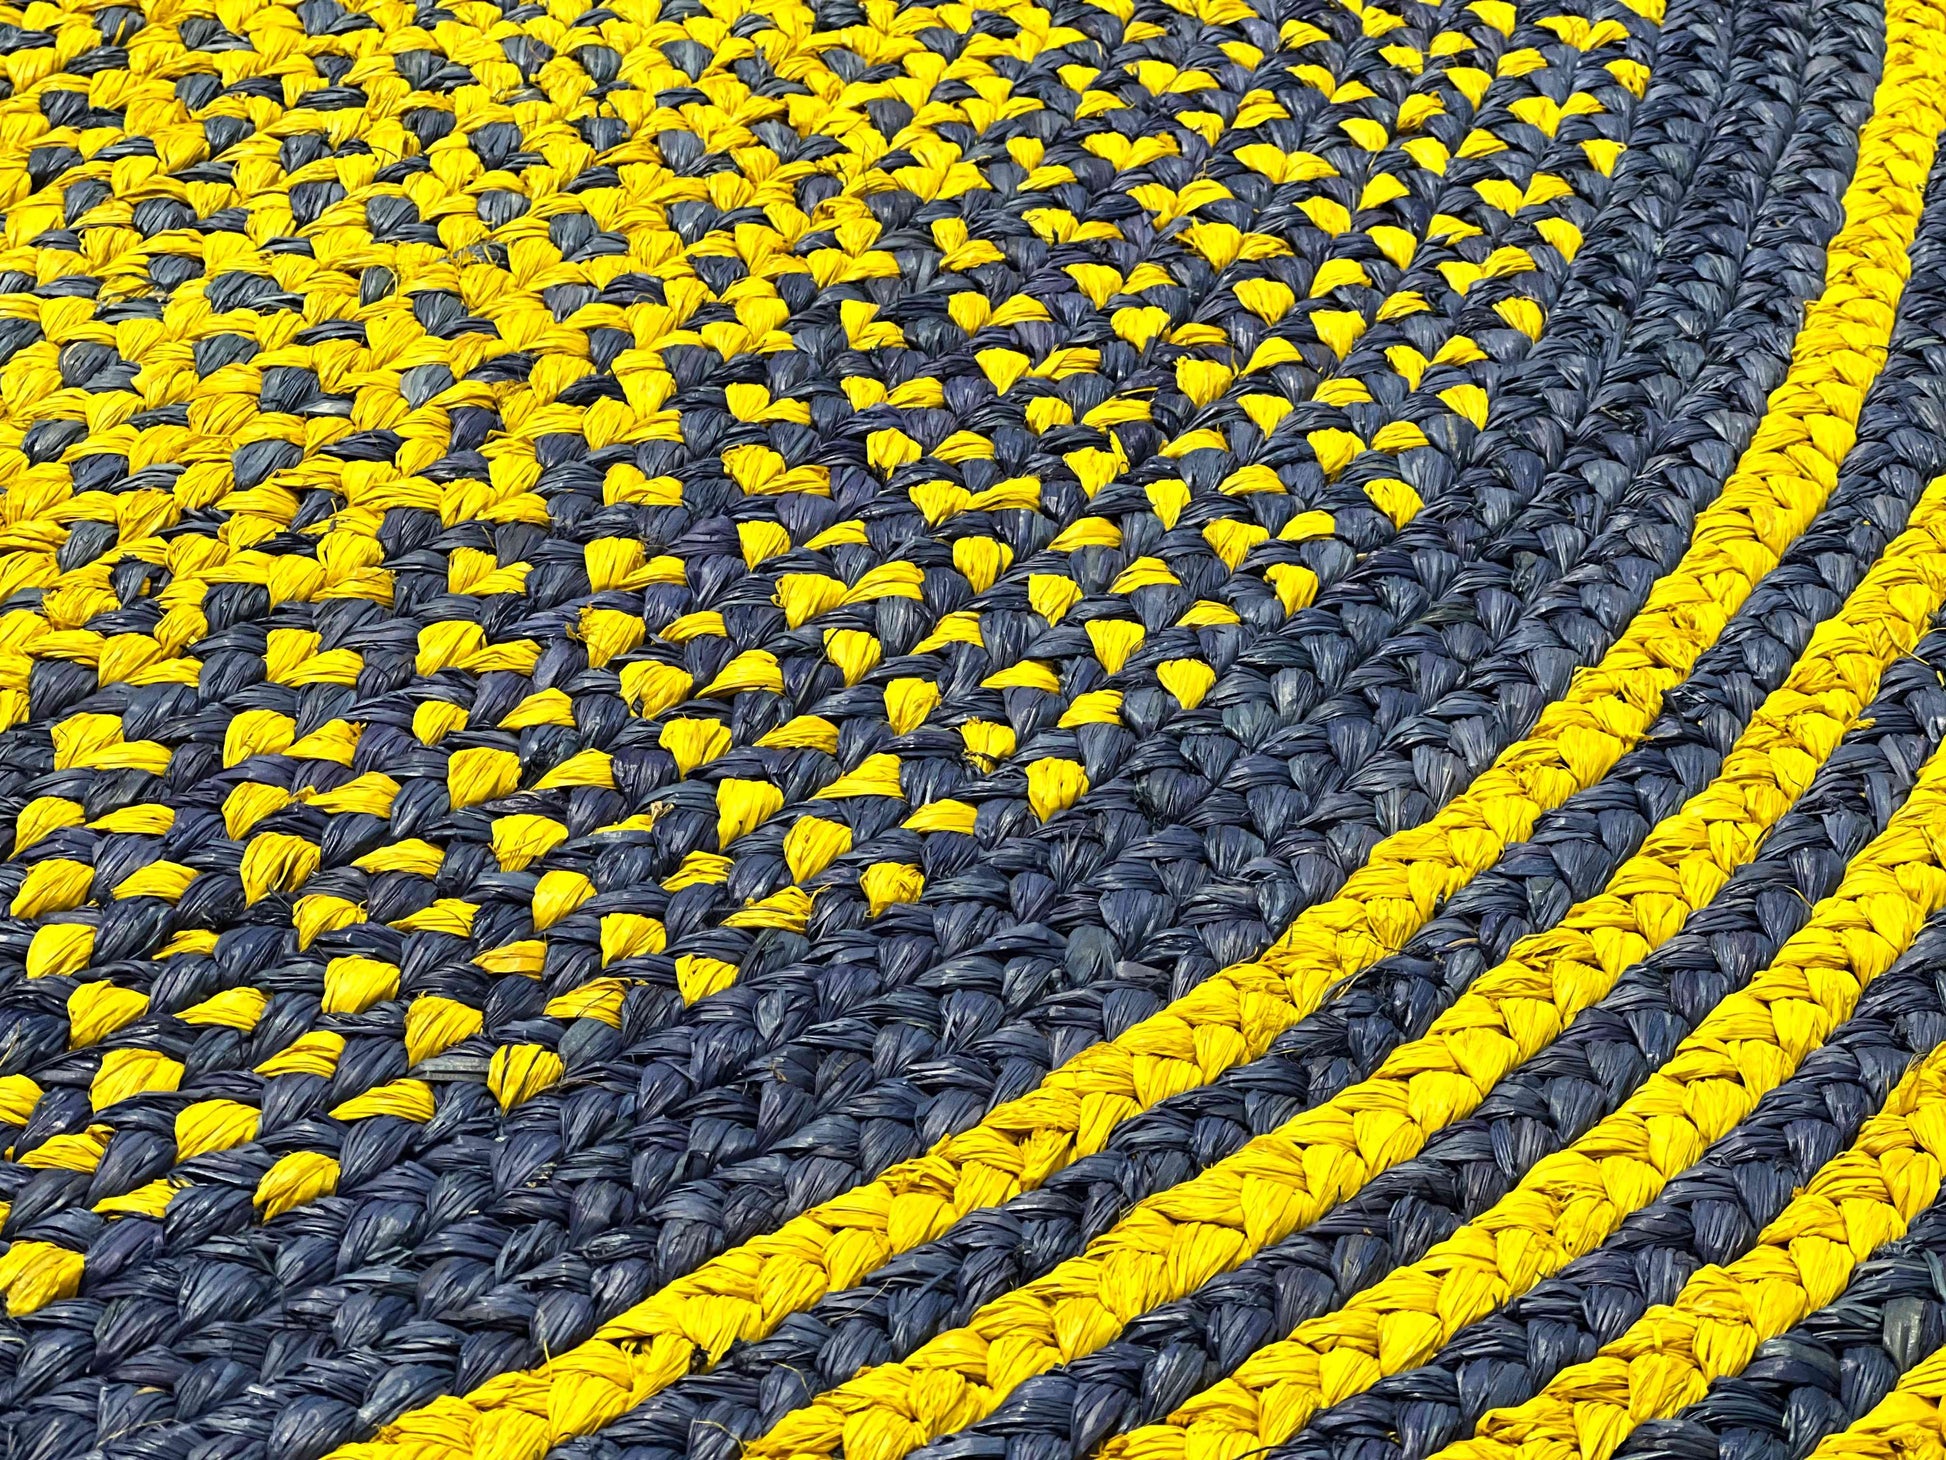 Tapis rond en raphia bleu vif & jaune- Natacha - 200 cm Intimani Ethnique chic